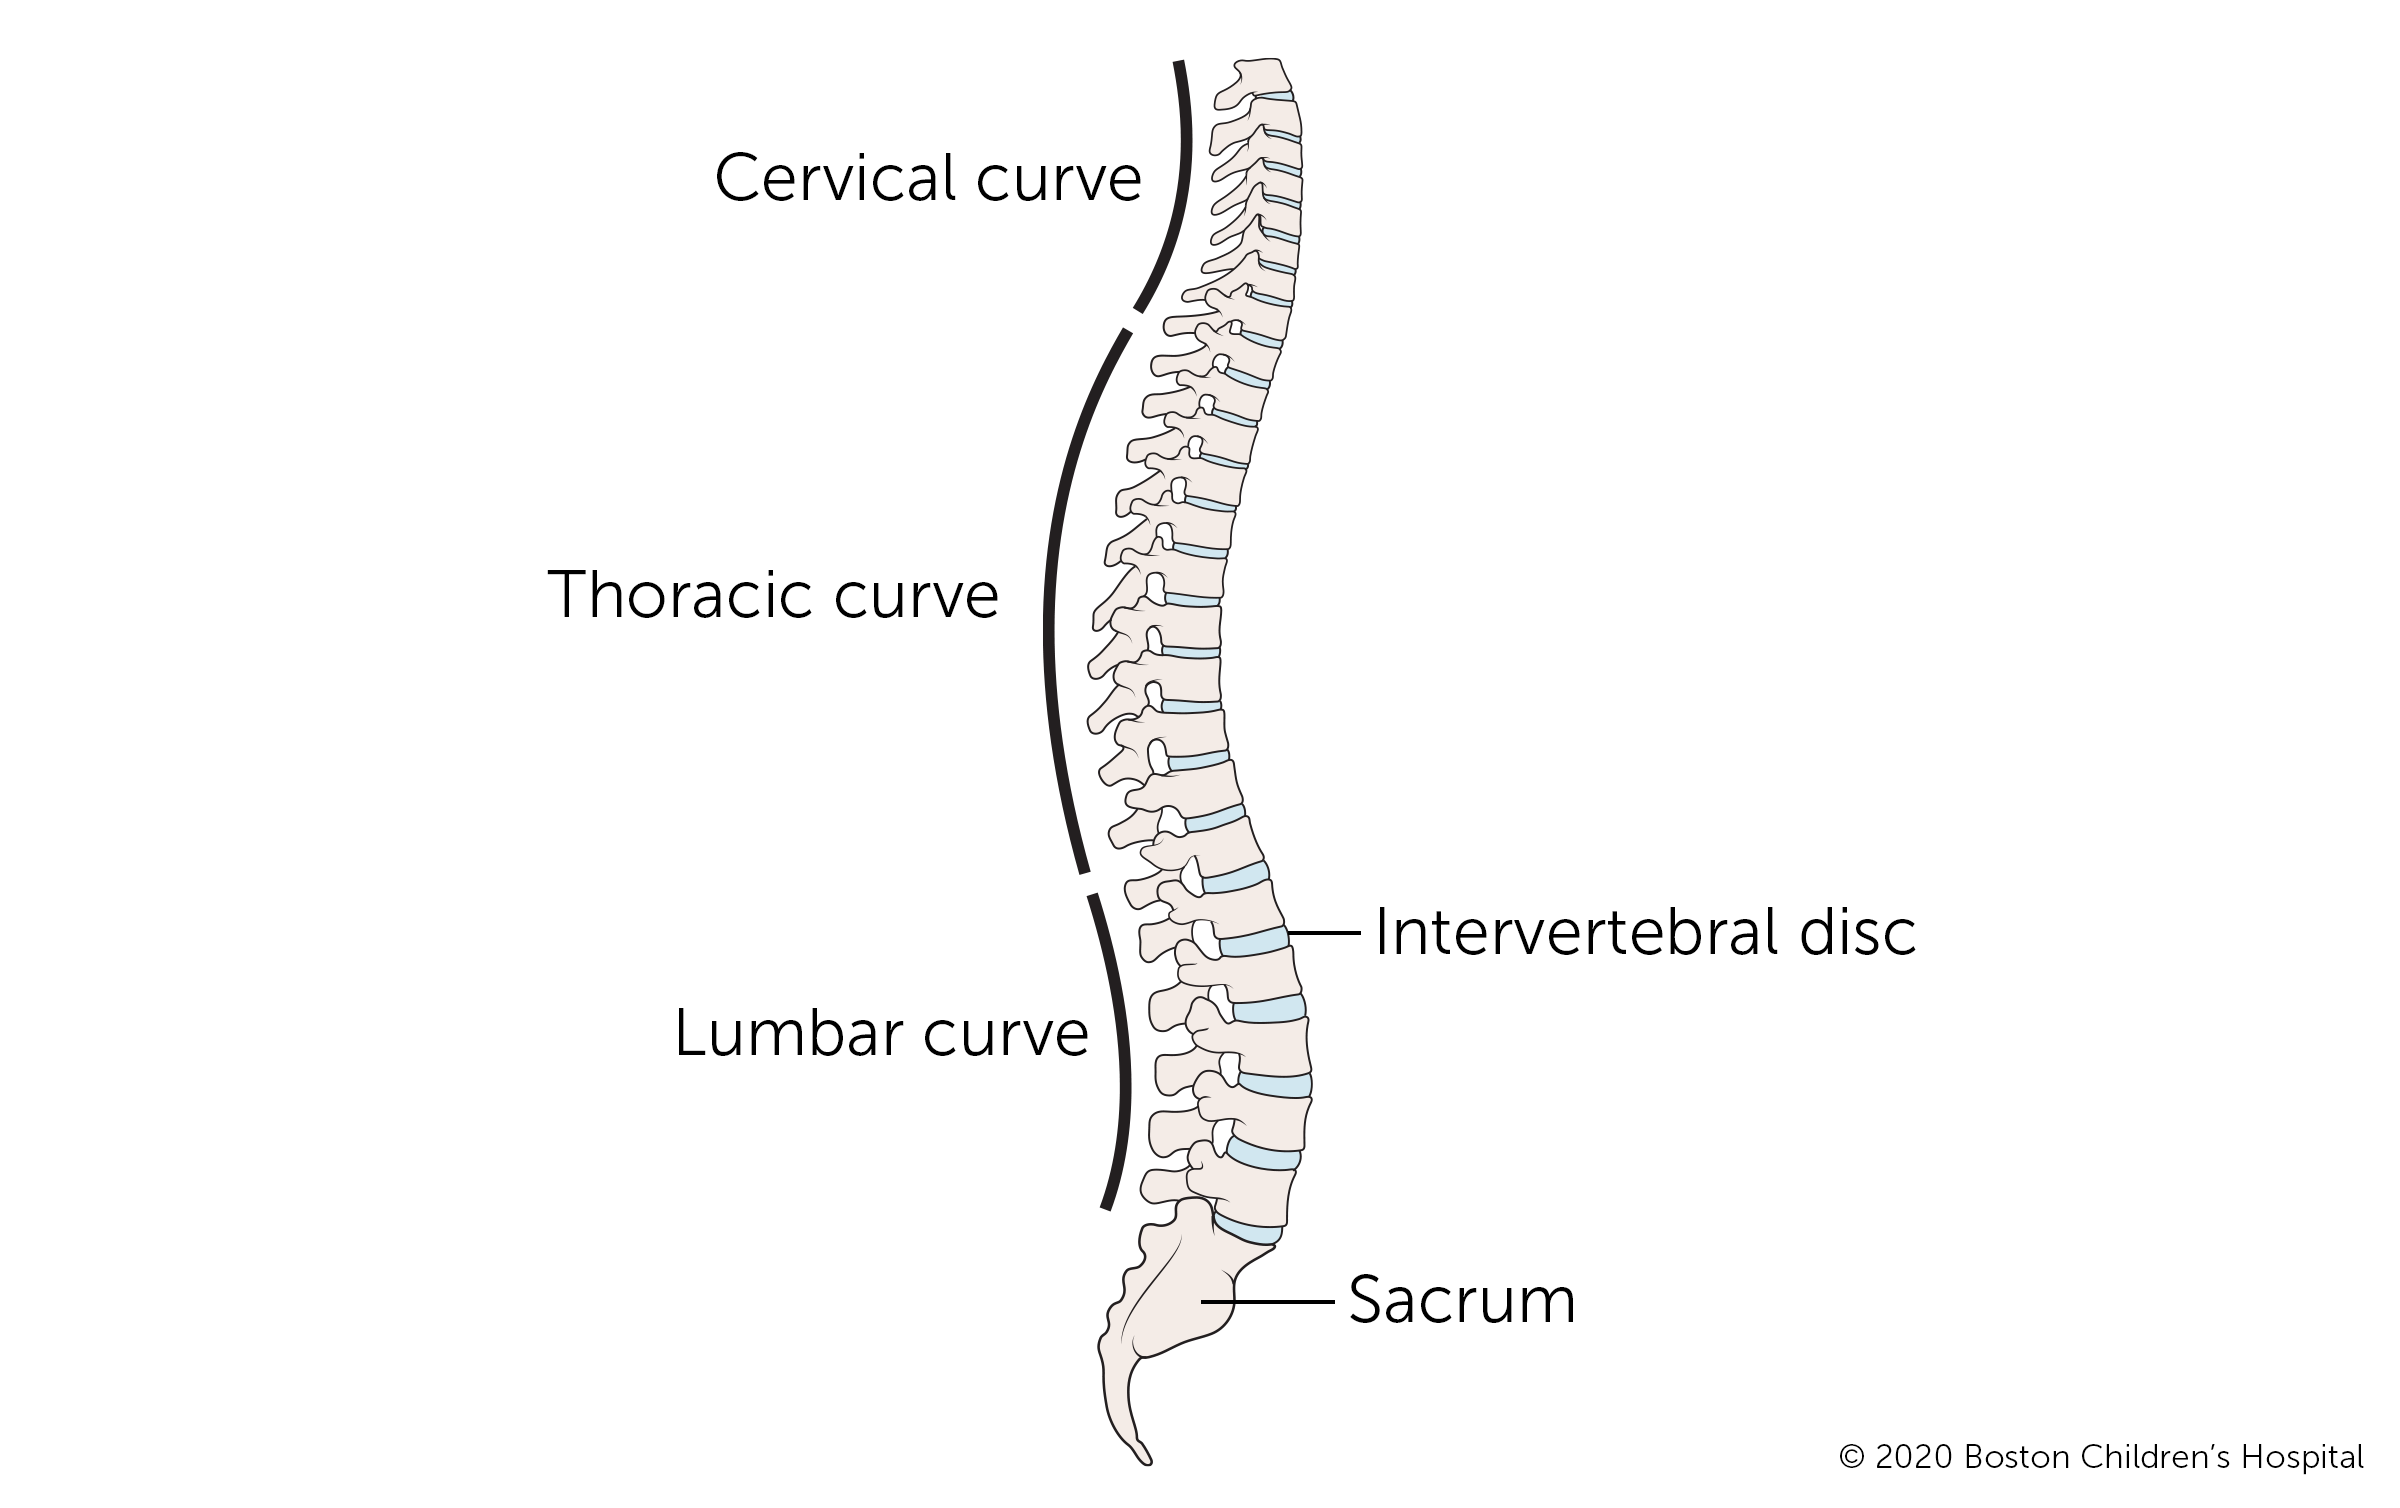 从上到下，脊椎的区域分别是颈椎(颈部)、胸椎(中背部)、腰椎(下背部)和骶骨(尾骨)。